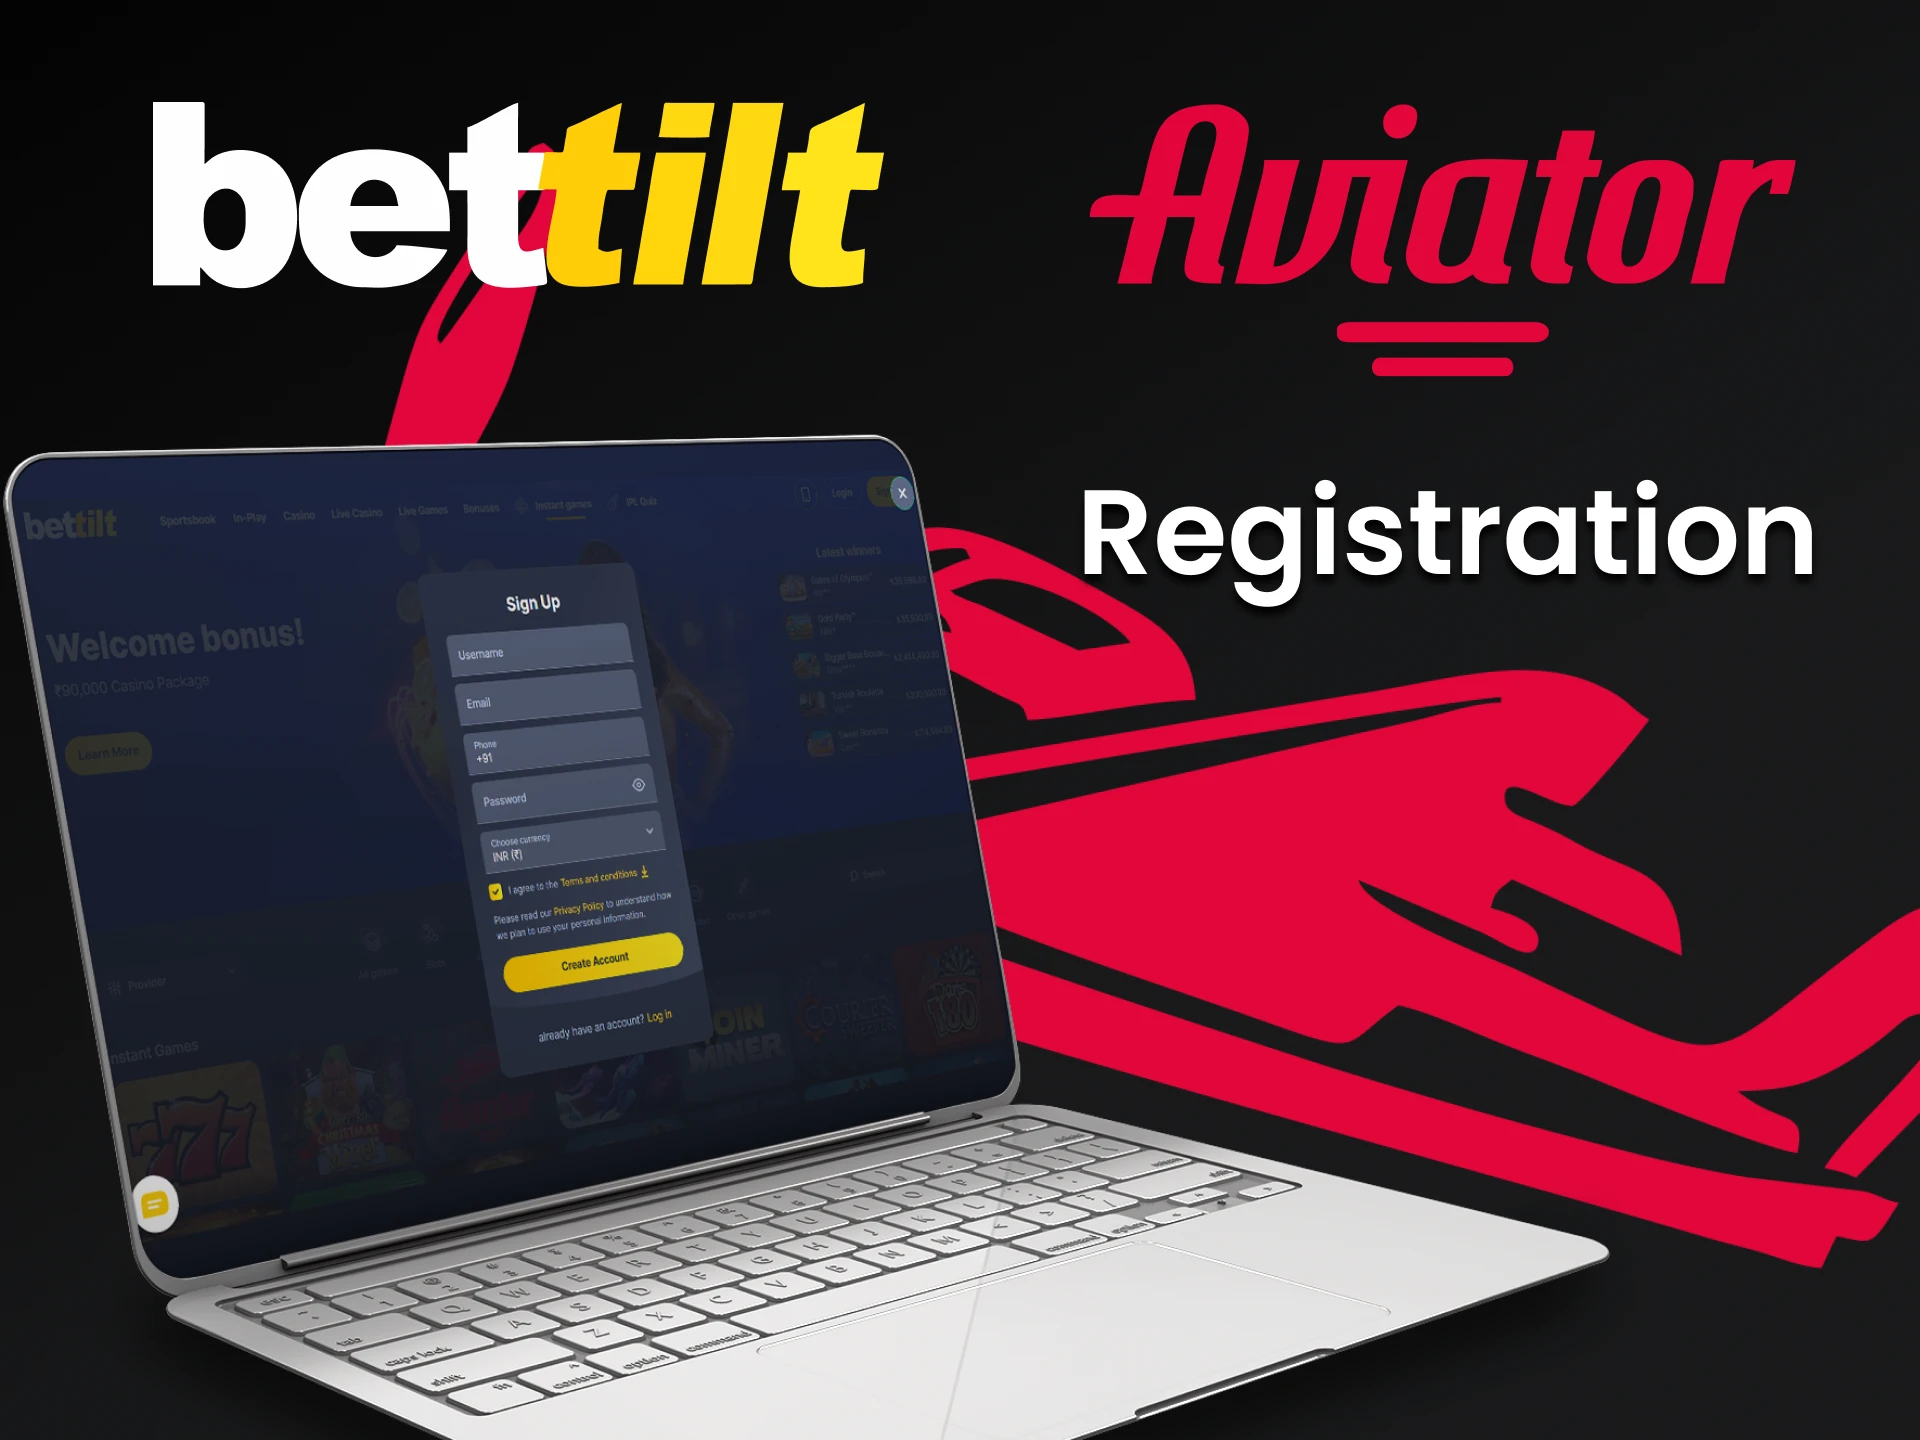 Passe pelo processo de registro no Bettilt para jogar Aviator.